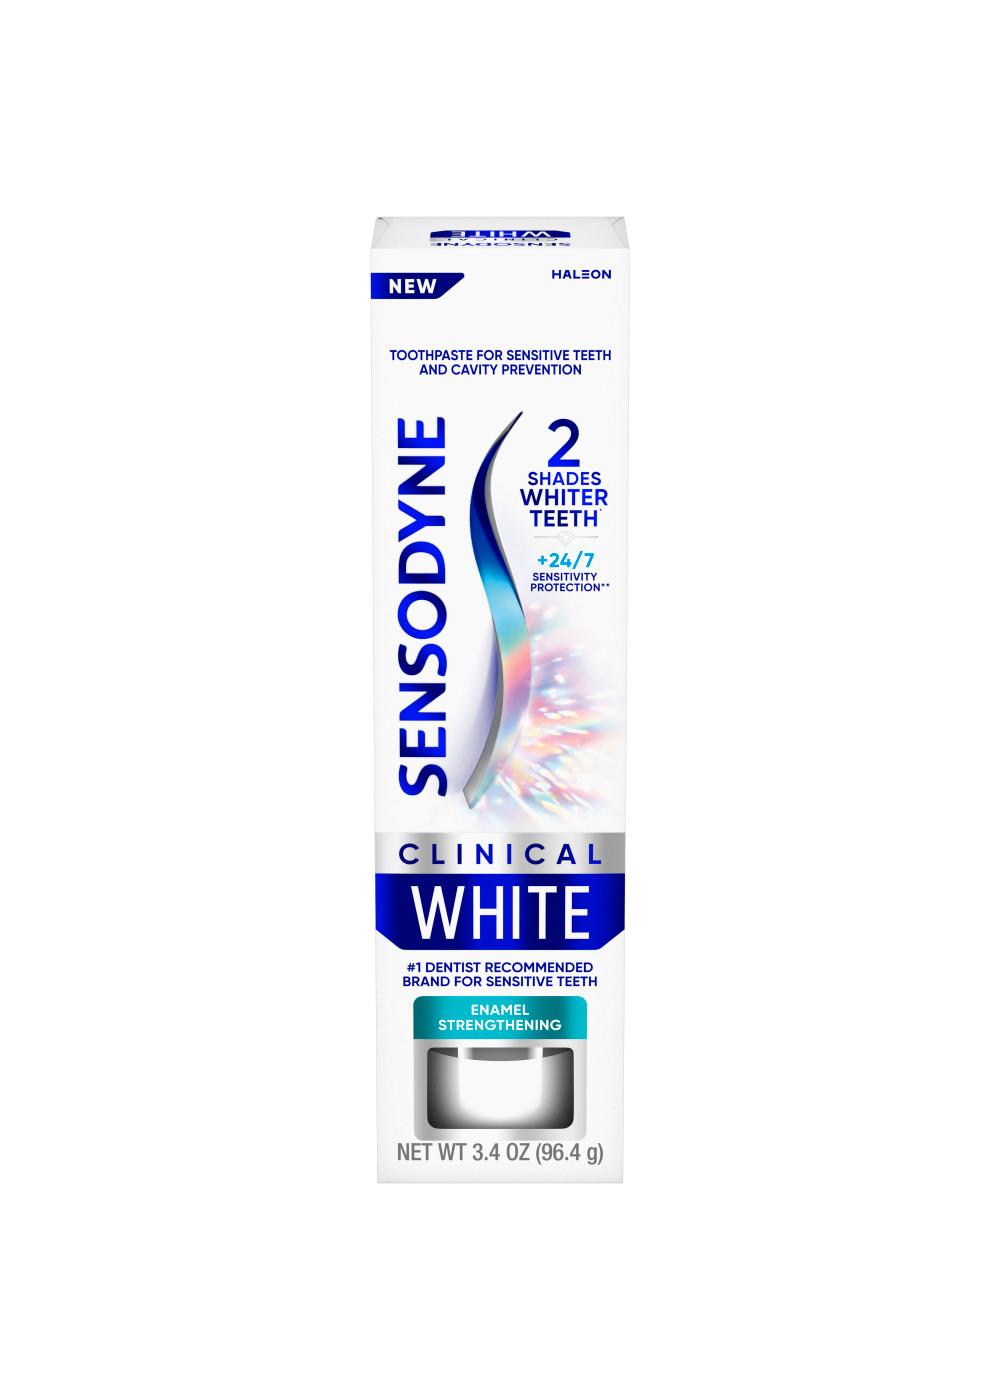 Sensodyne Clinical White Toothpaste - Enamel Strengthening; image 1 of 9